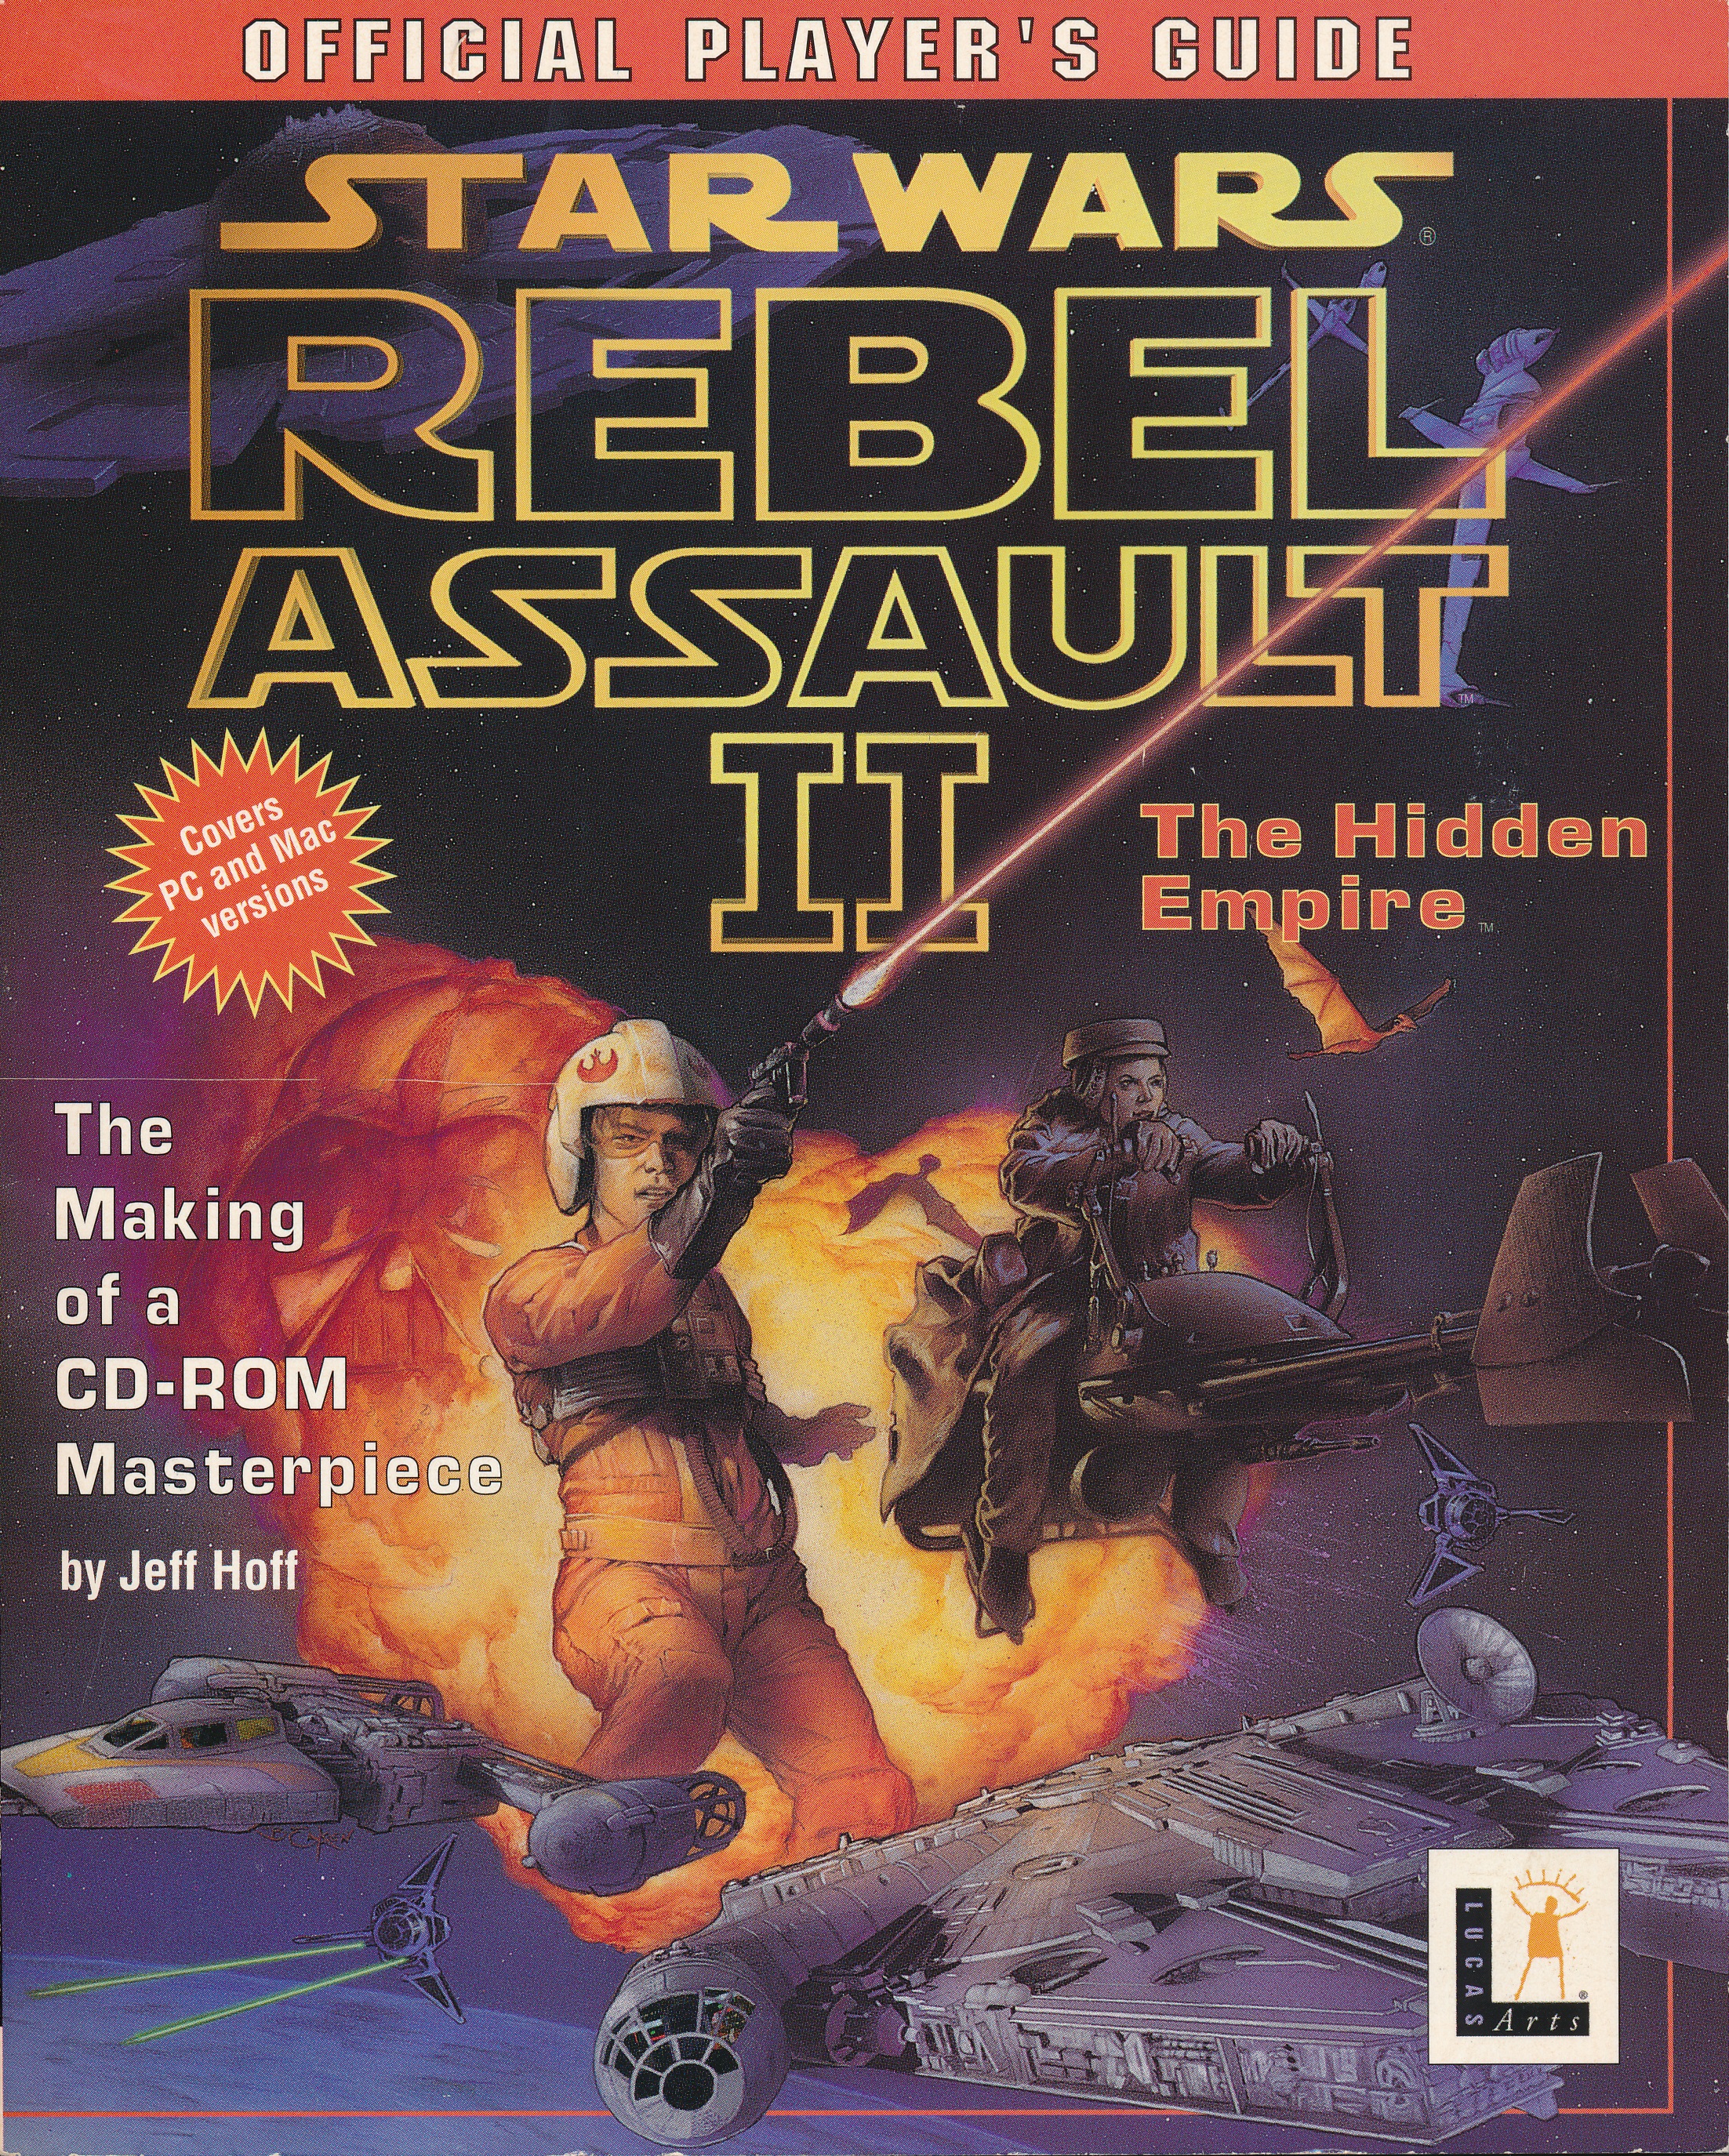 rebel assault ii